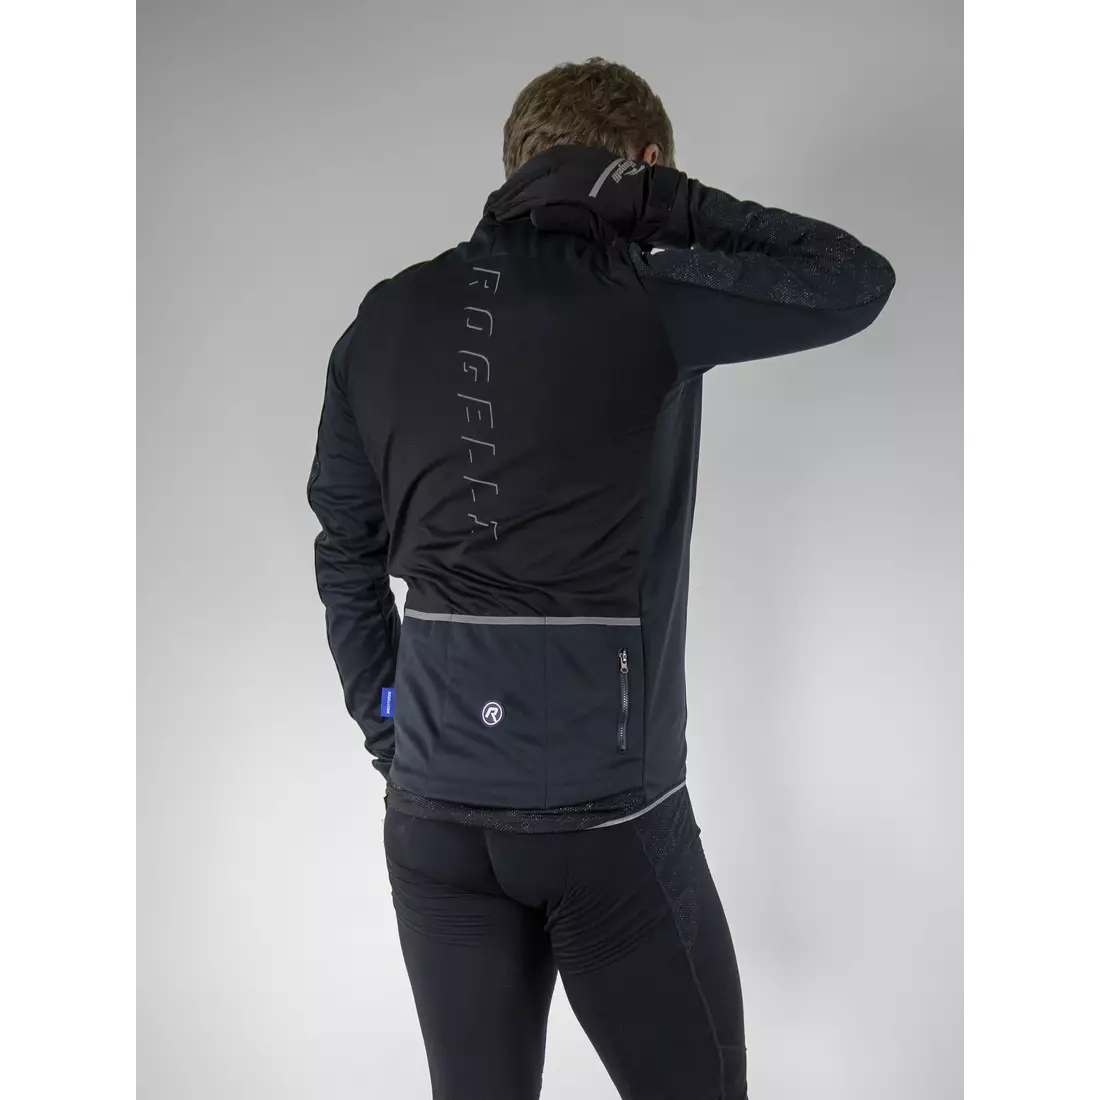 ROGELLI RENON 3.0 téli kerékpáros kabát, softshell, fényvisszaverő, fekete